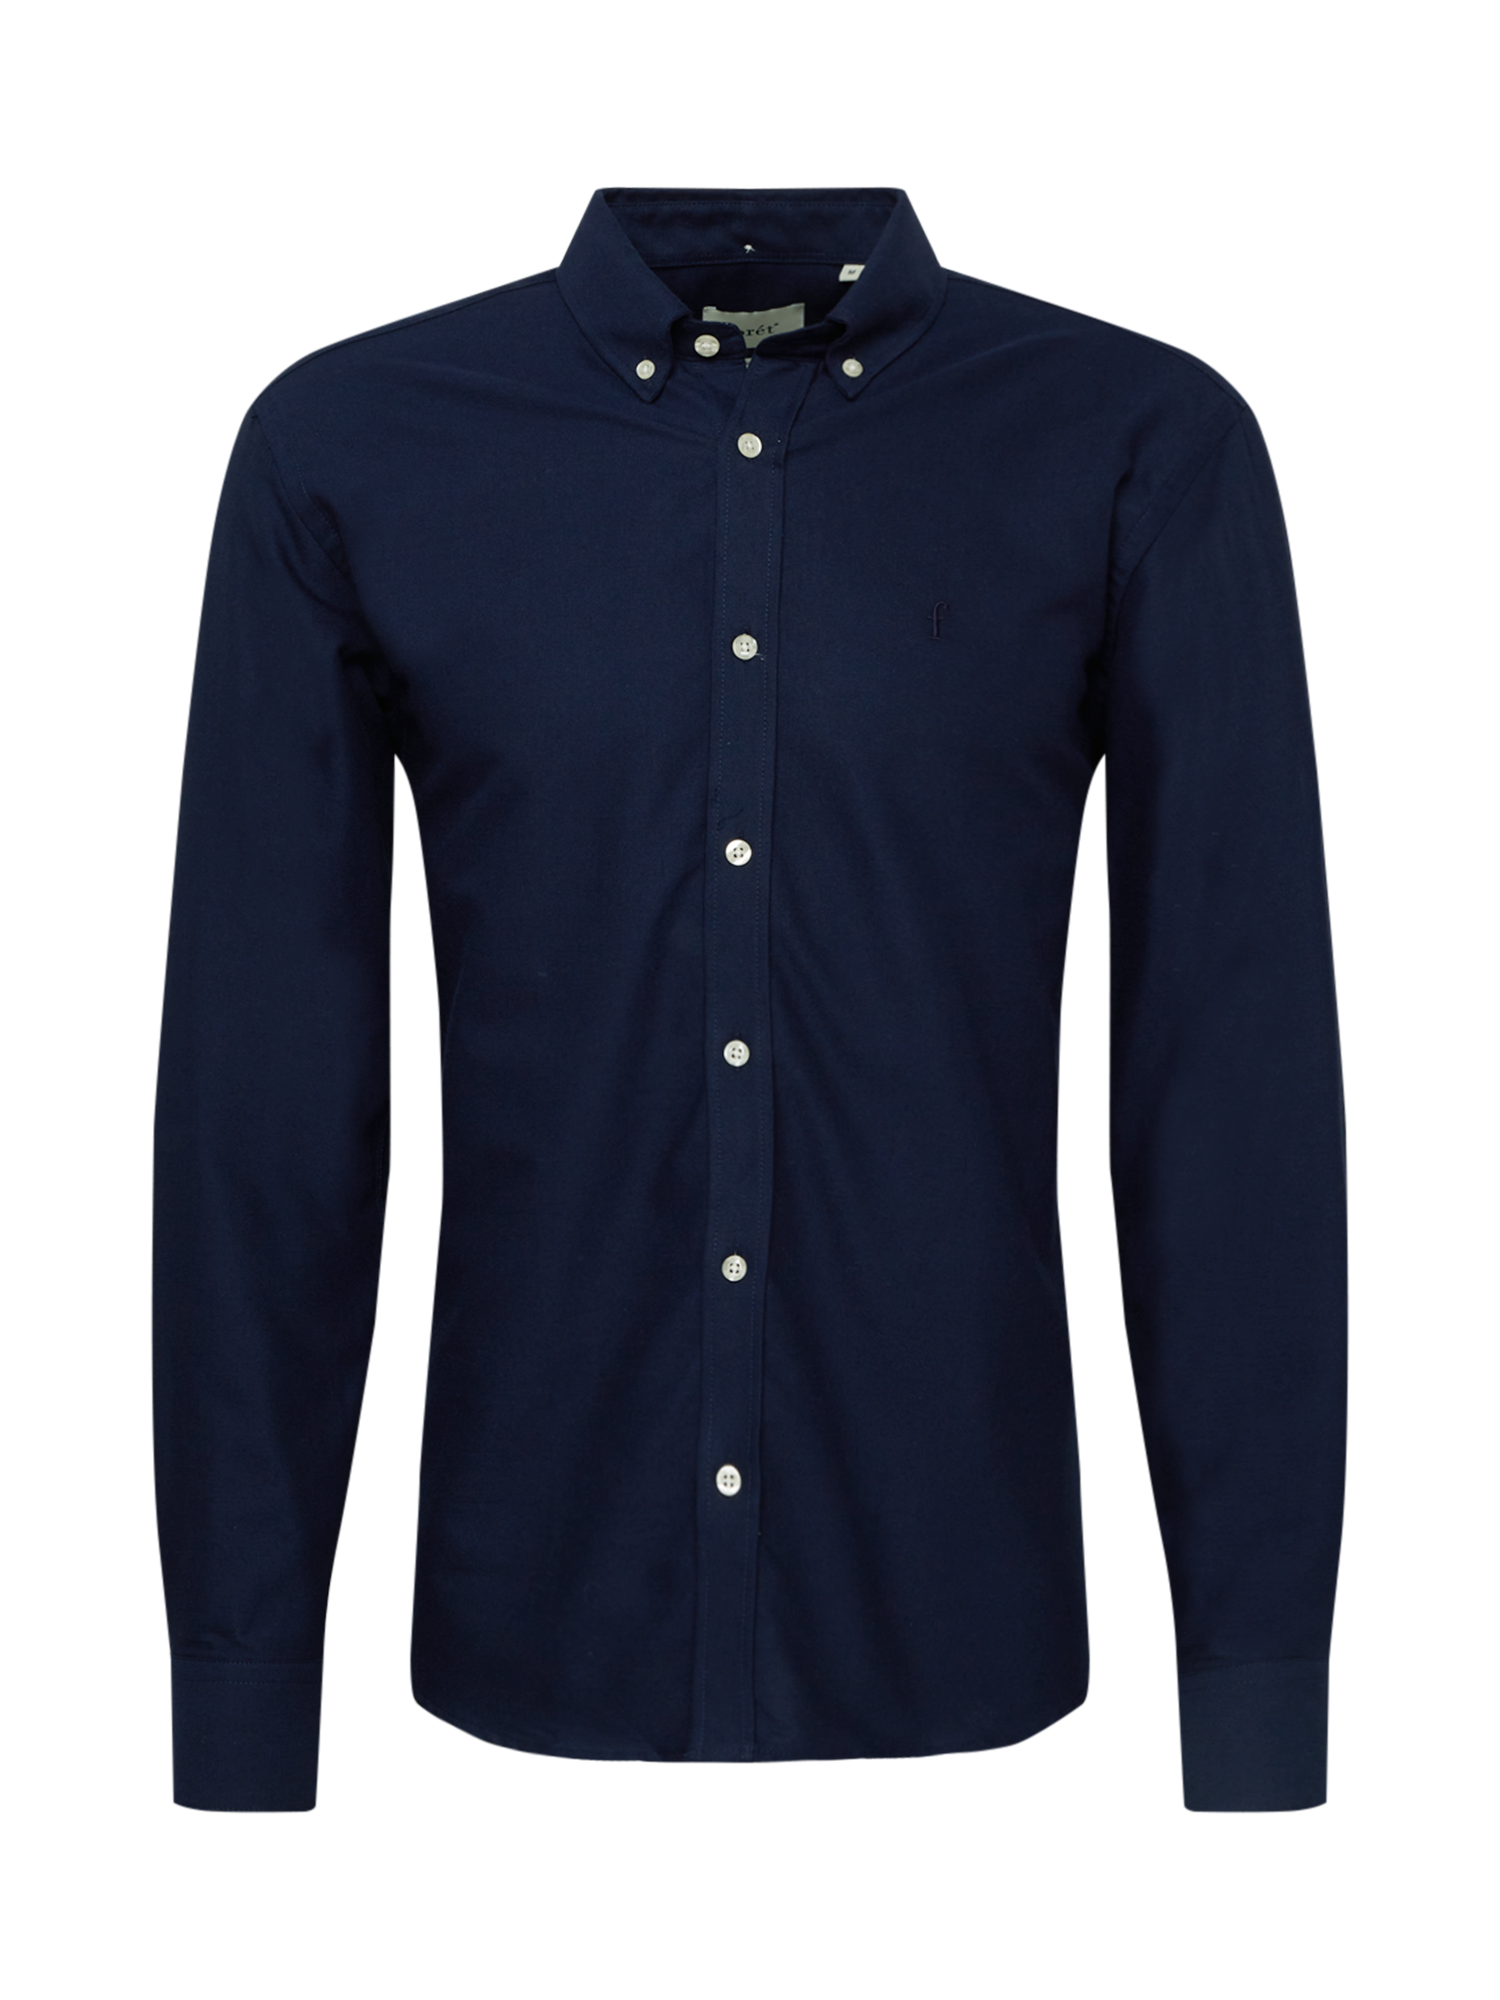 Abbigliamento Uomo forét Hemd in Blu Scuro 